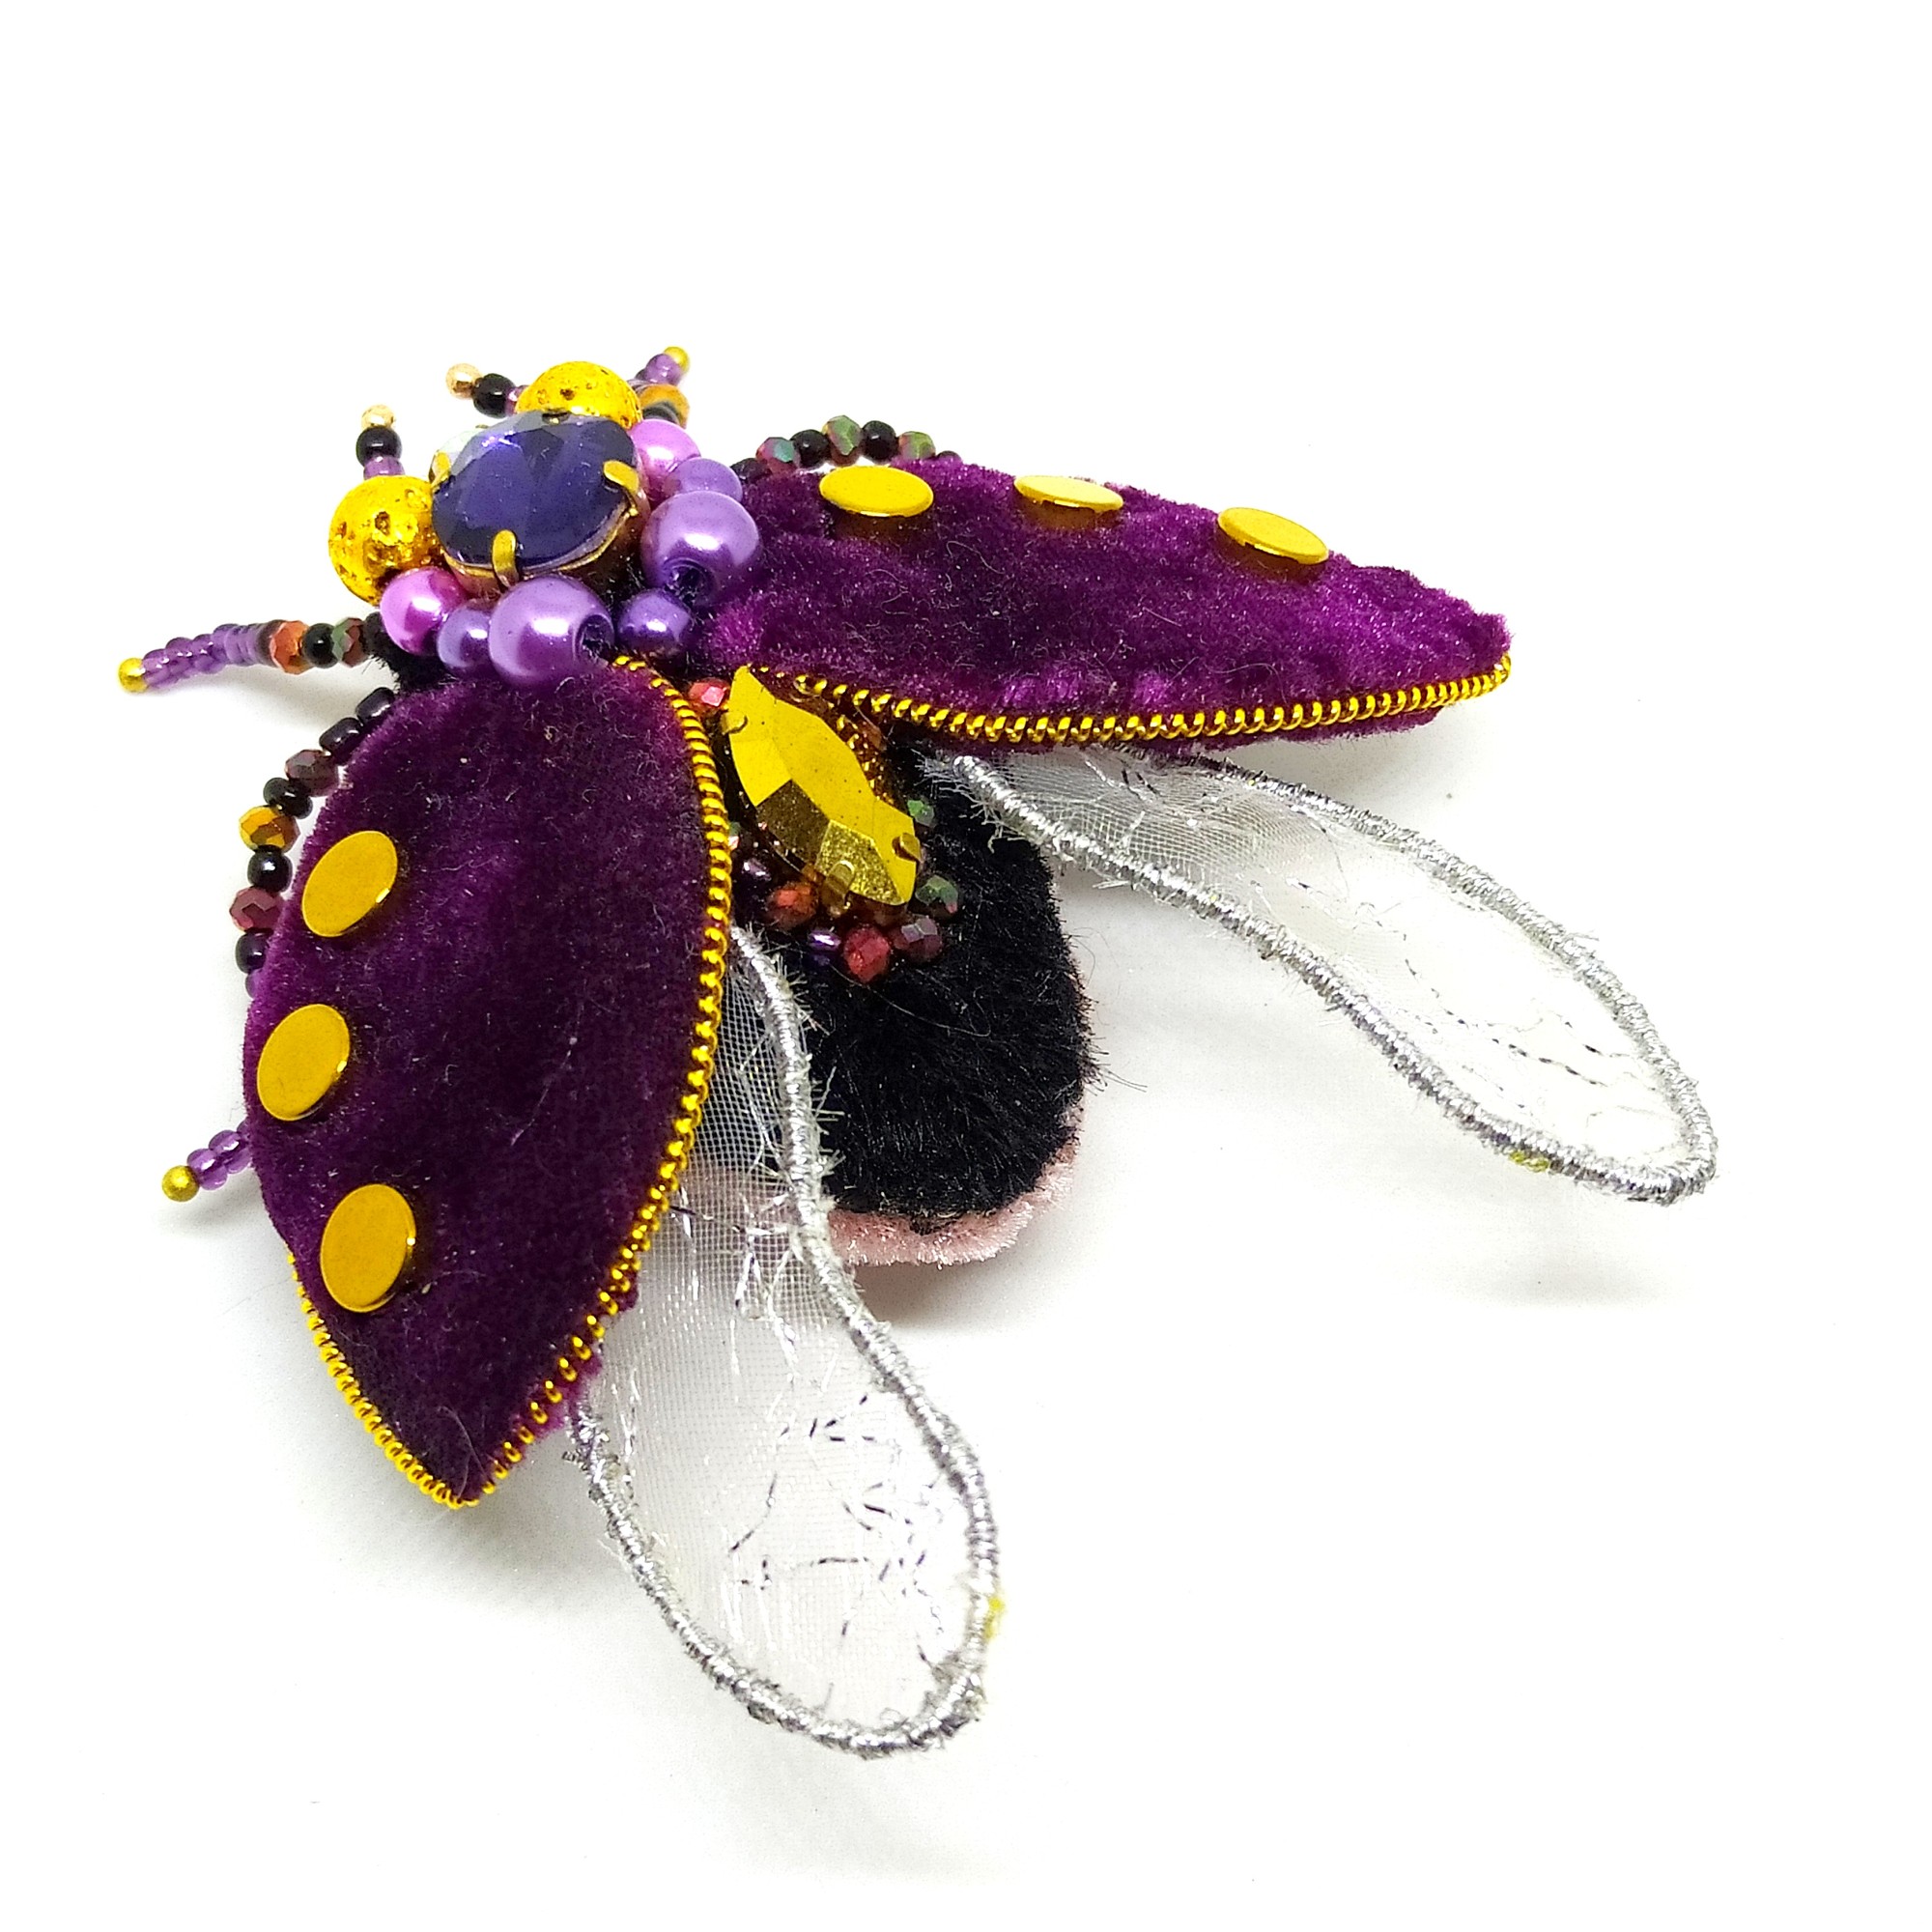 Handmade brooch "ladybug"